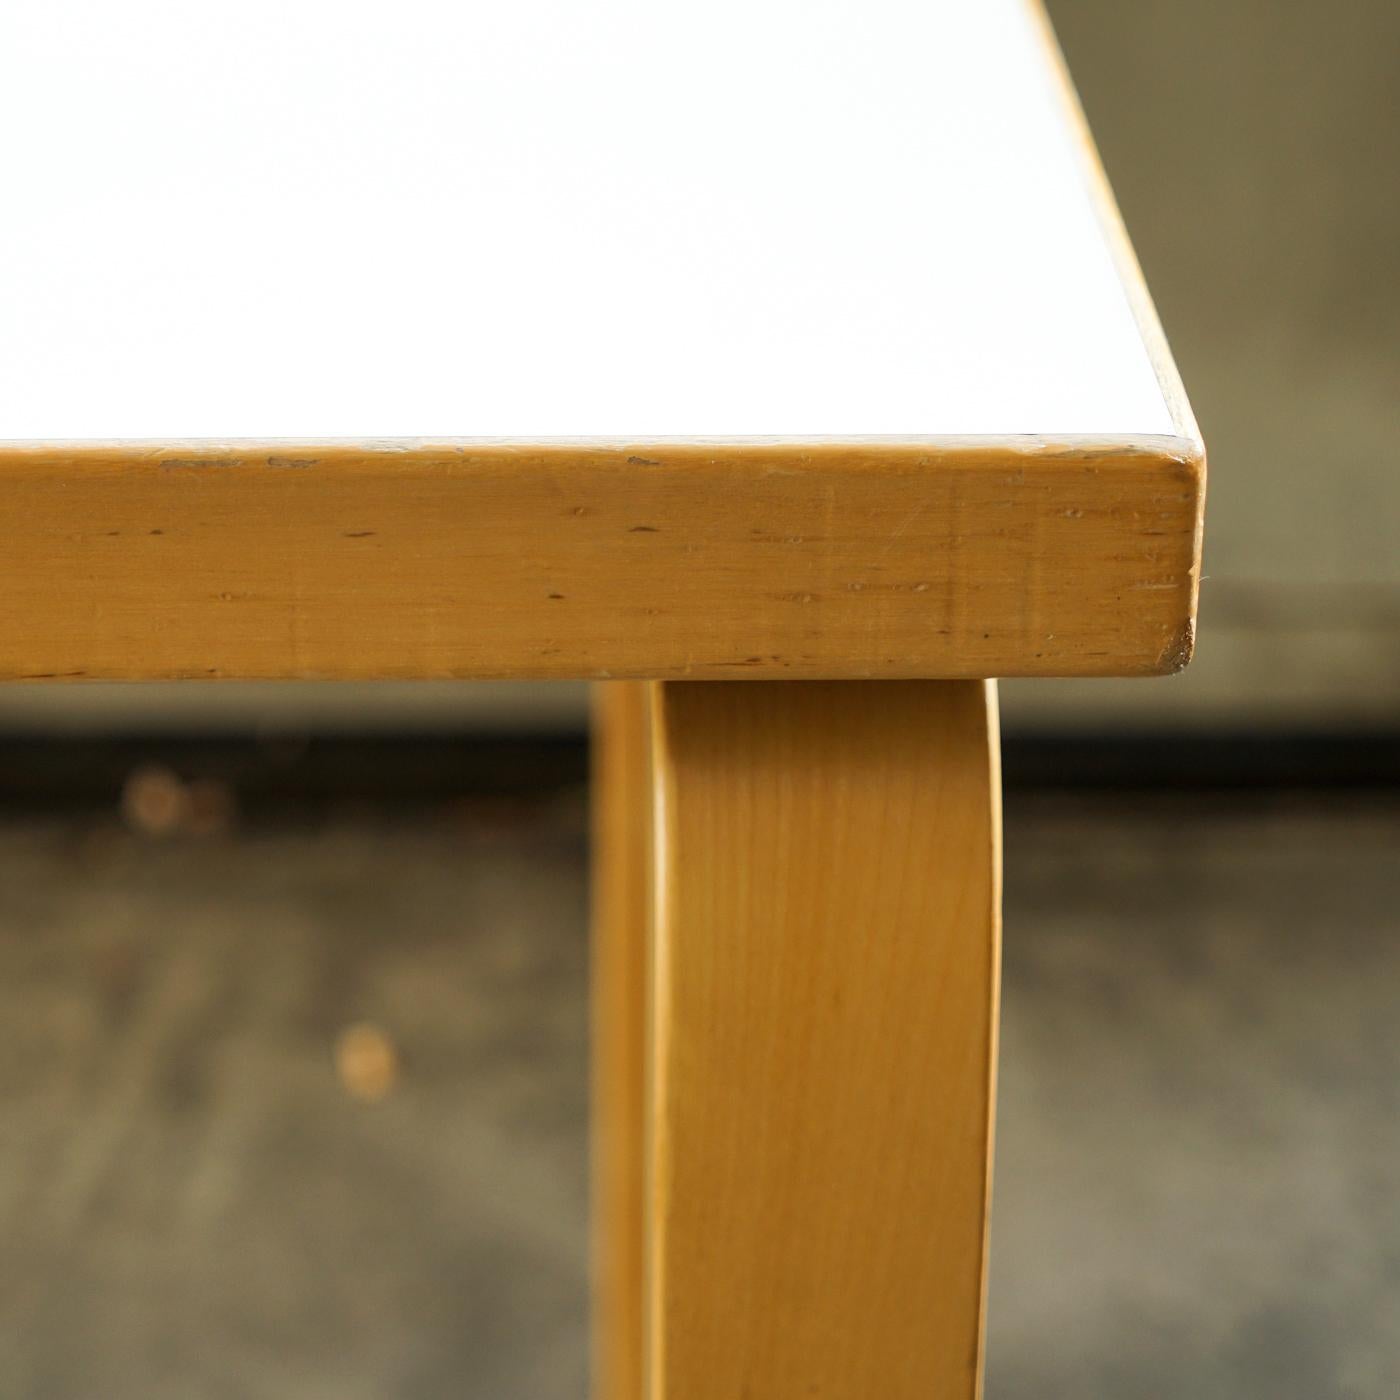 Scandinavian Modern Table Model 80A White Laminated, Alvar Aalto for Artek, Finland